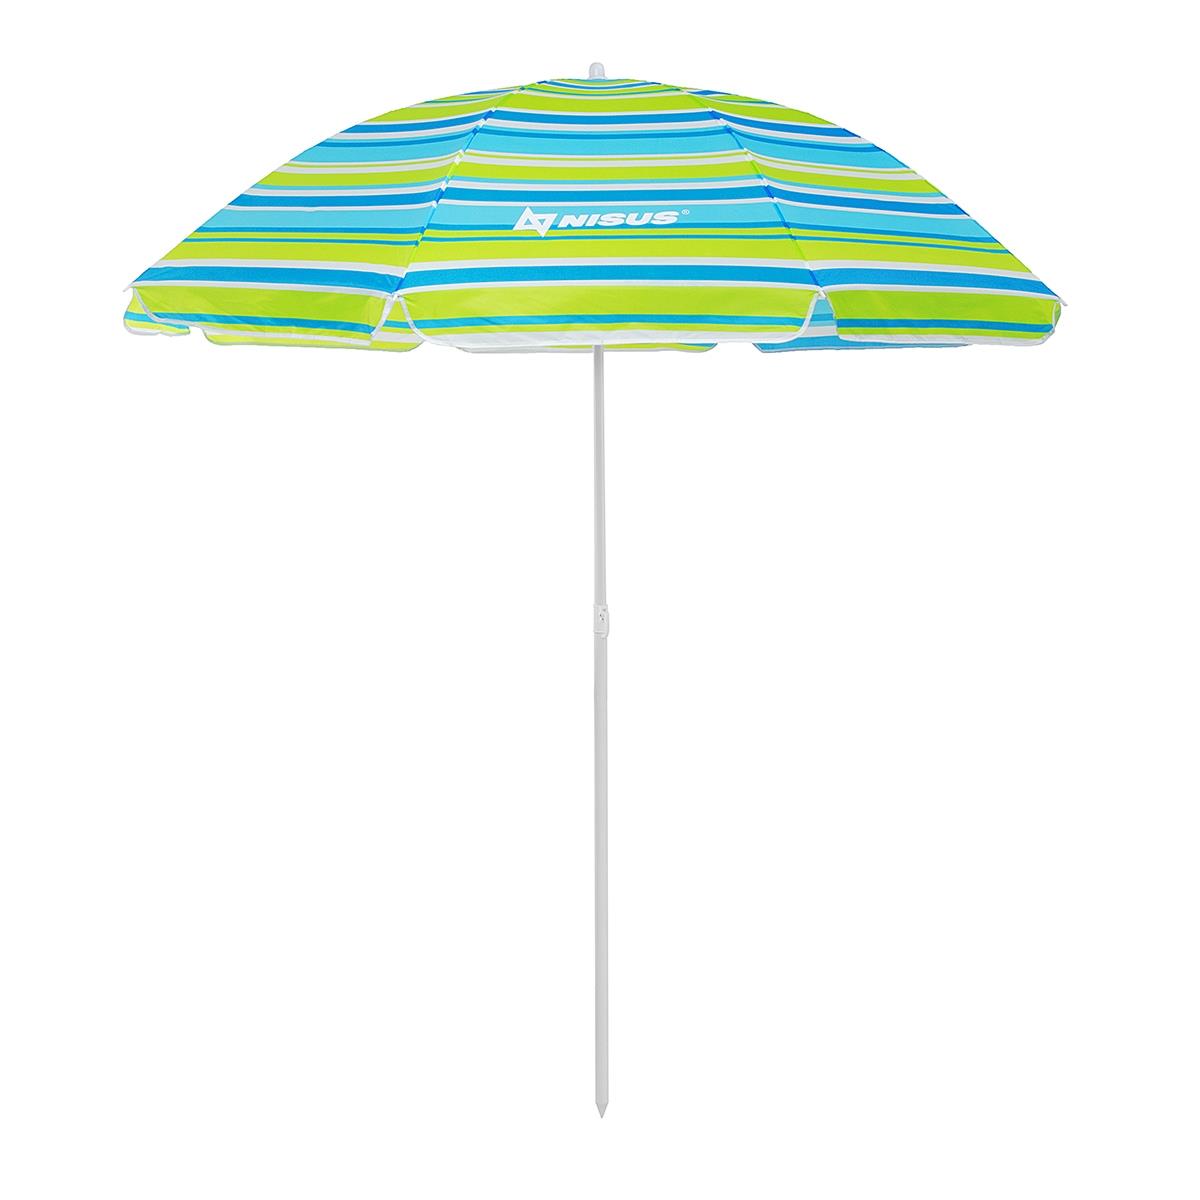 Зонт пляжный d 2,00м  с наклоном (22/25/170Т) NA-200N-SB Nisus зонт пляжный ø 1 7 м с наклоном n 200n so nisus